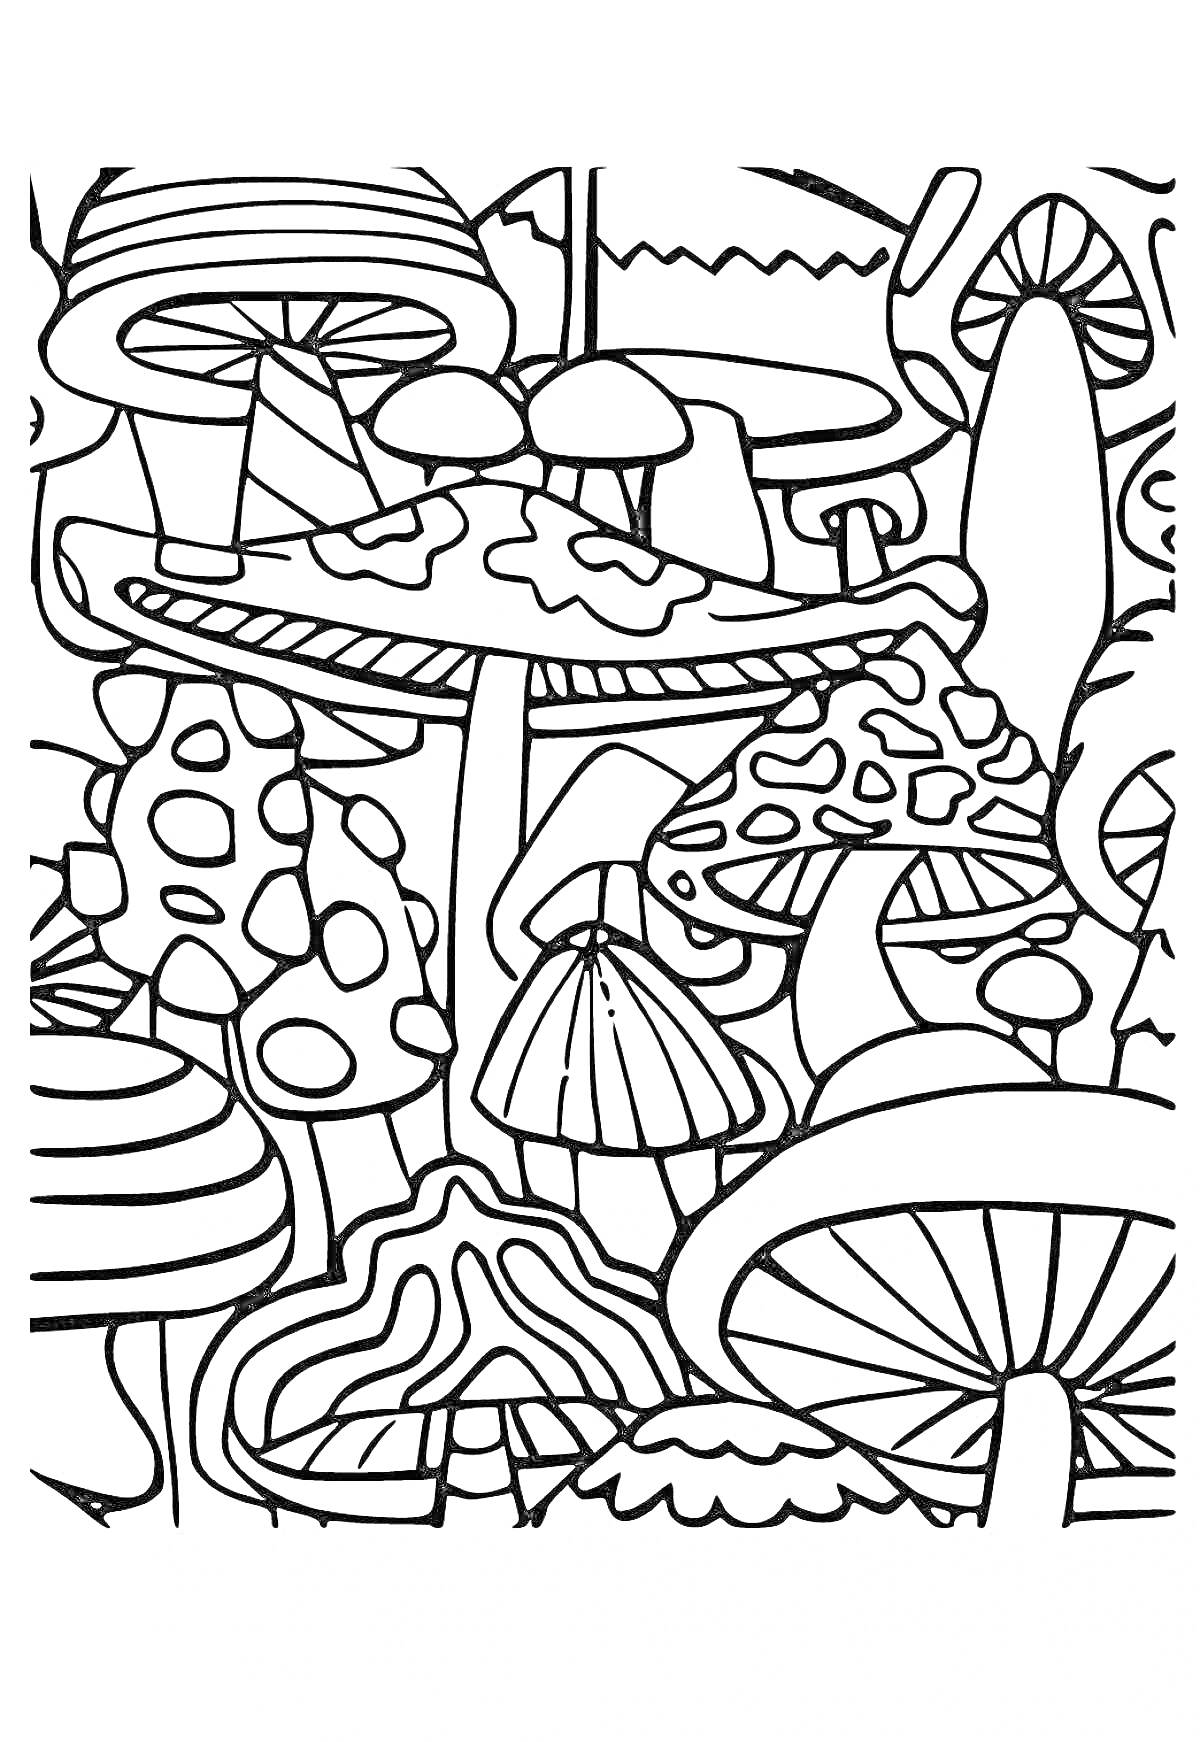 Раскраска Лес с множеством грибов различных форм и размеров